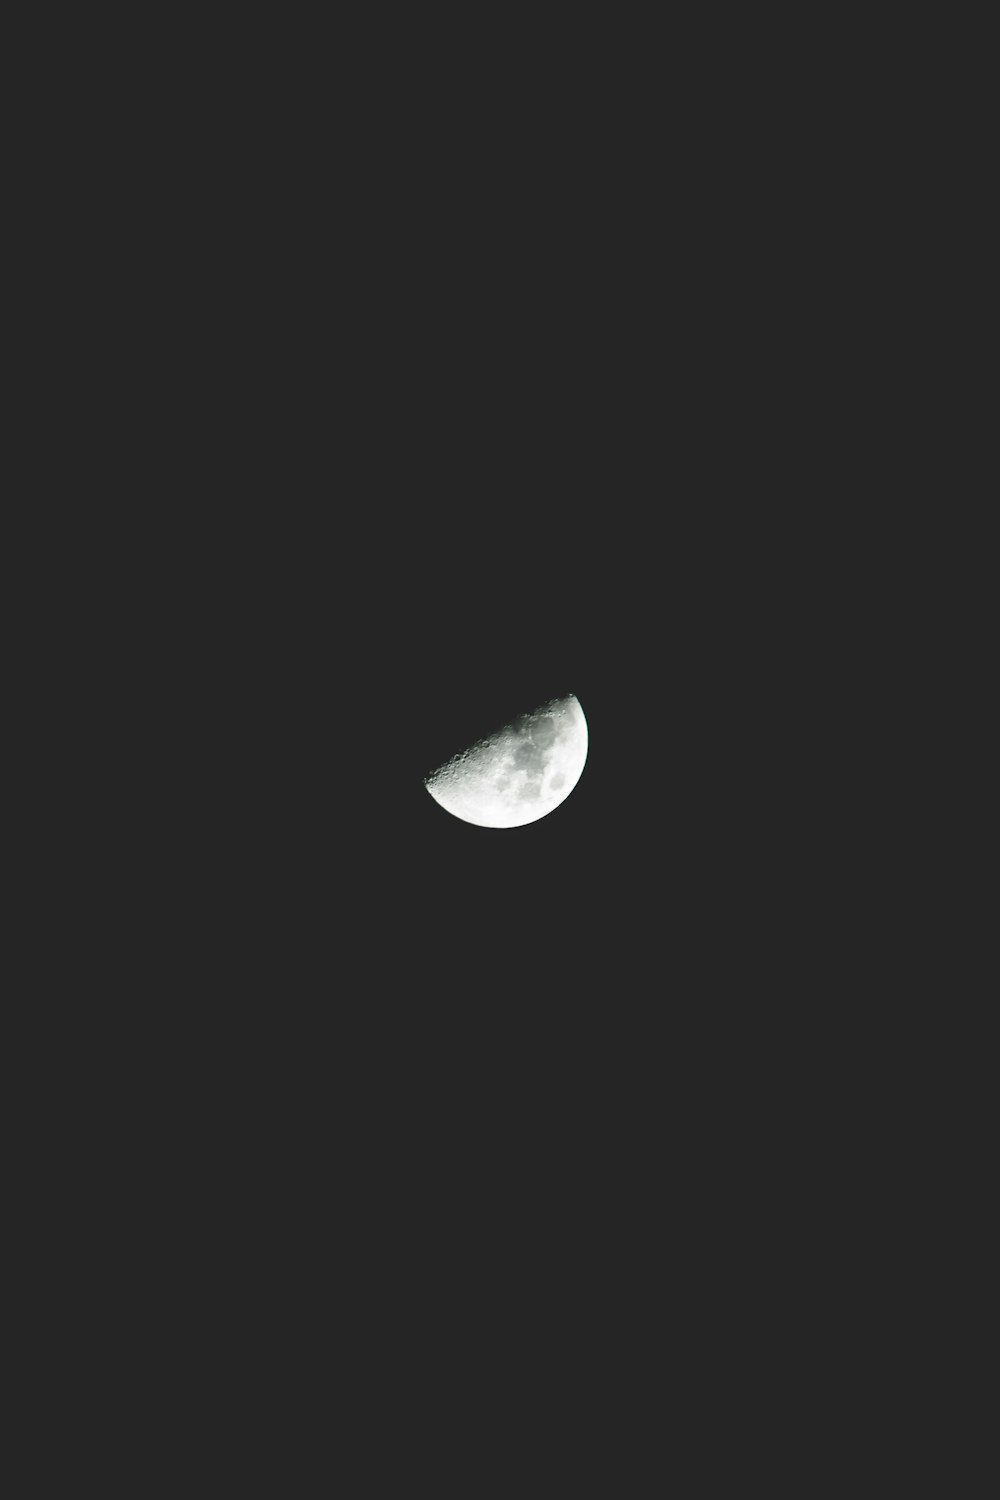 half moon against black background photo – Free Moon Image on Unsplash